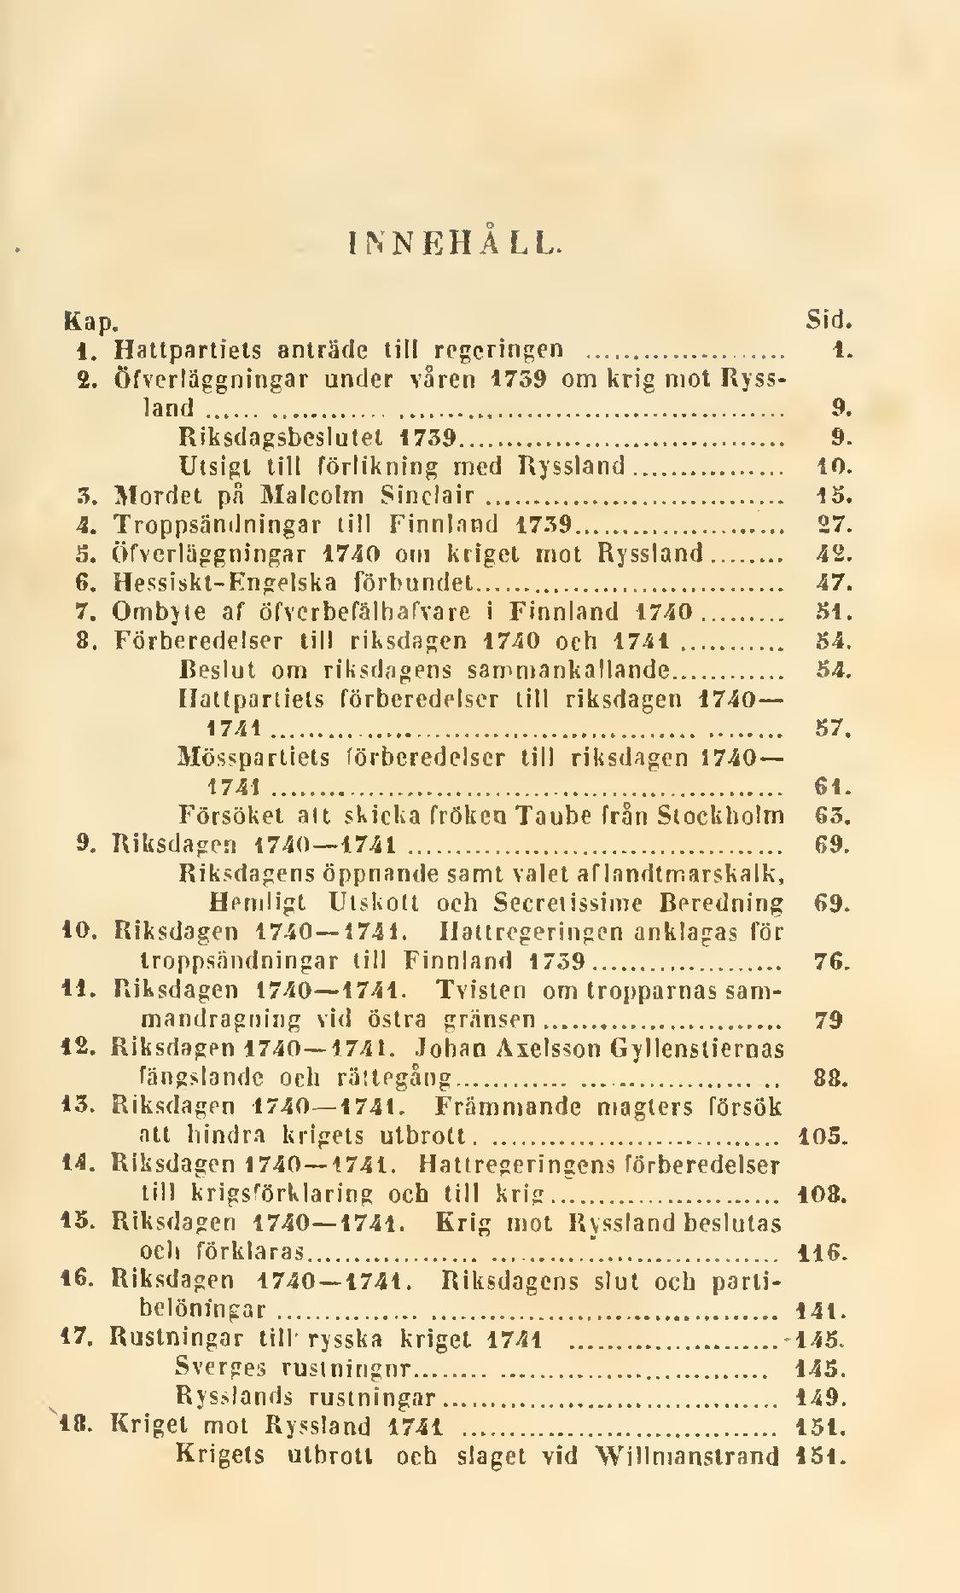 Ombyte af öfvcrbefälhafvare i Finnland 1740 SI. 8. Förberedelser till riksdagen 1740 och 1741 54. Beslut om riksdagens sammankallande 54. Hattpartiets förberedelser till riksdagen 1740 1741 57.